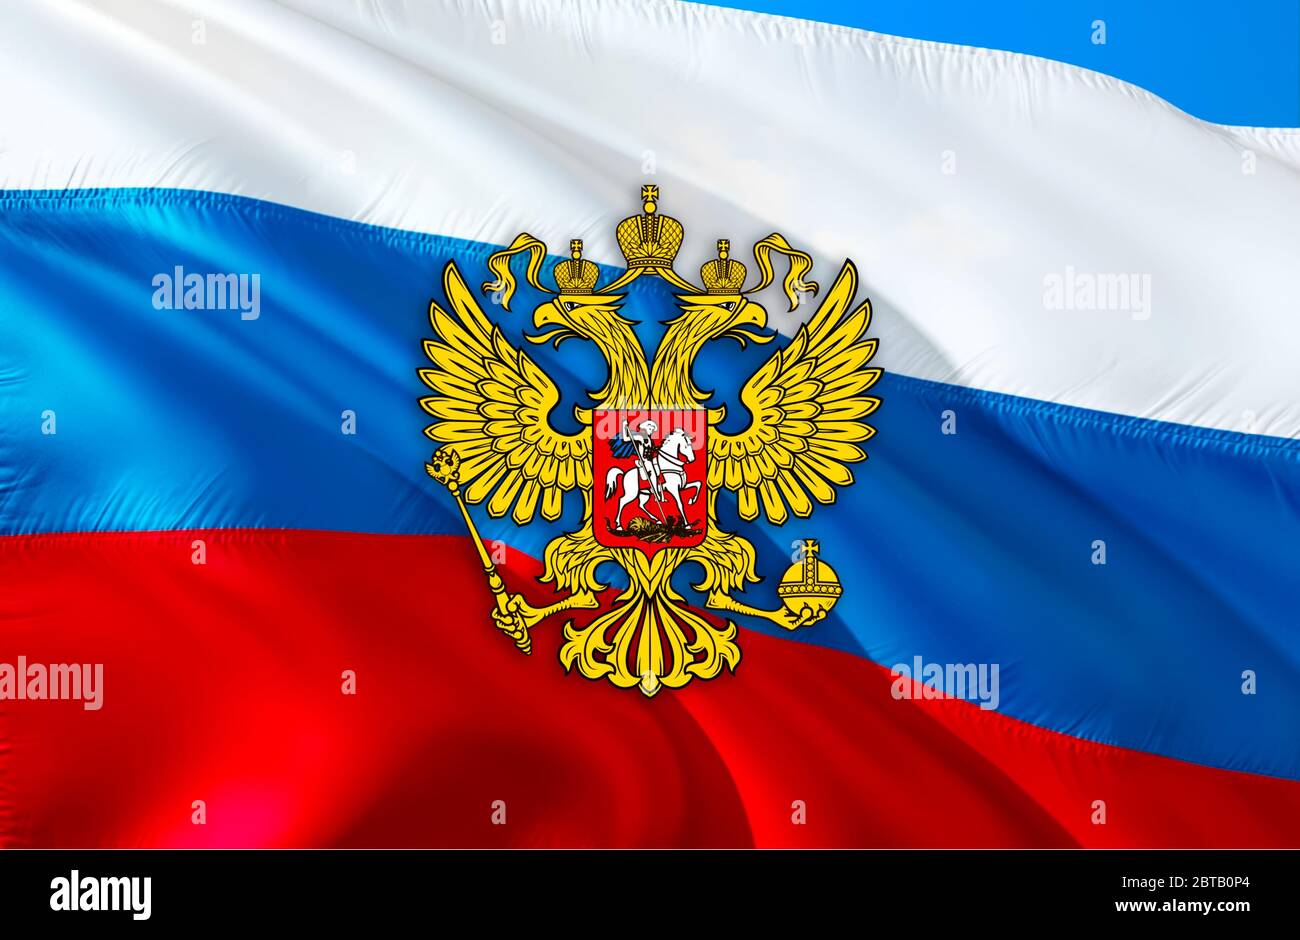 https://c8.alamy.com/compde/2btb0p4/russland-emblem-auf-der-russischen-foderation-flagge-design-auf-russland-hintergrund-3d-rendering-russland-flagge-hintergrund-fur-russische-feiertage-russland-flagge-backgroun-2btb0p4.jpg